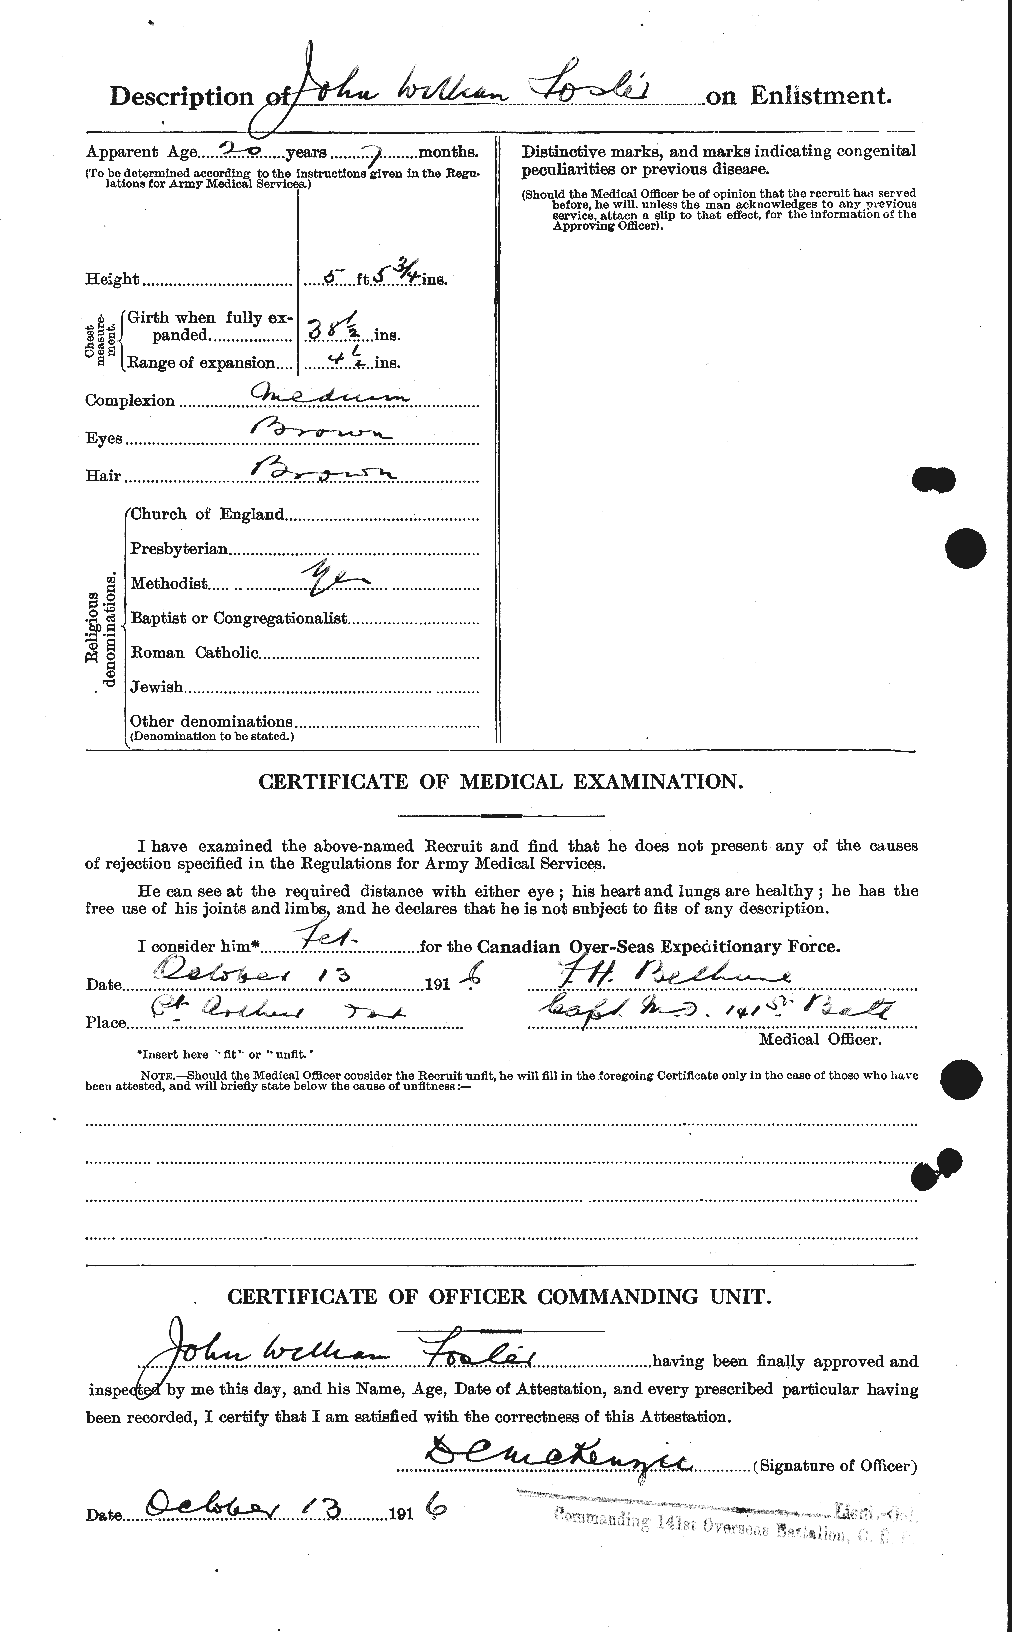 Dossiers du Personnel de la Première Guerre mondiale - CEC 333374b